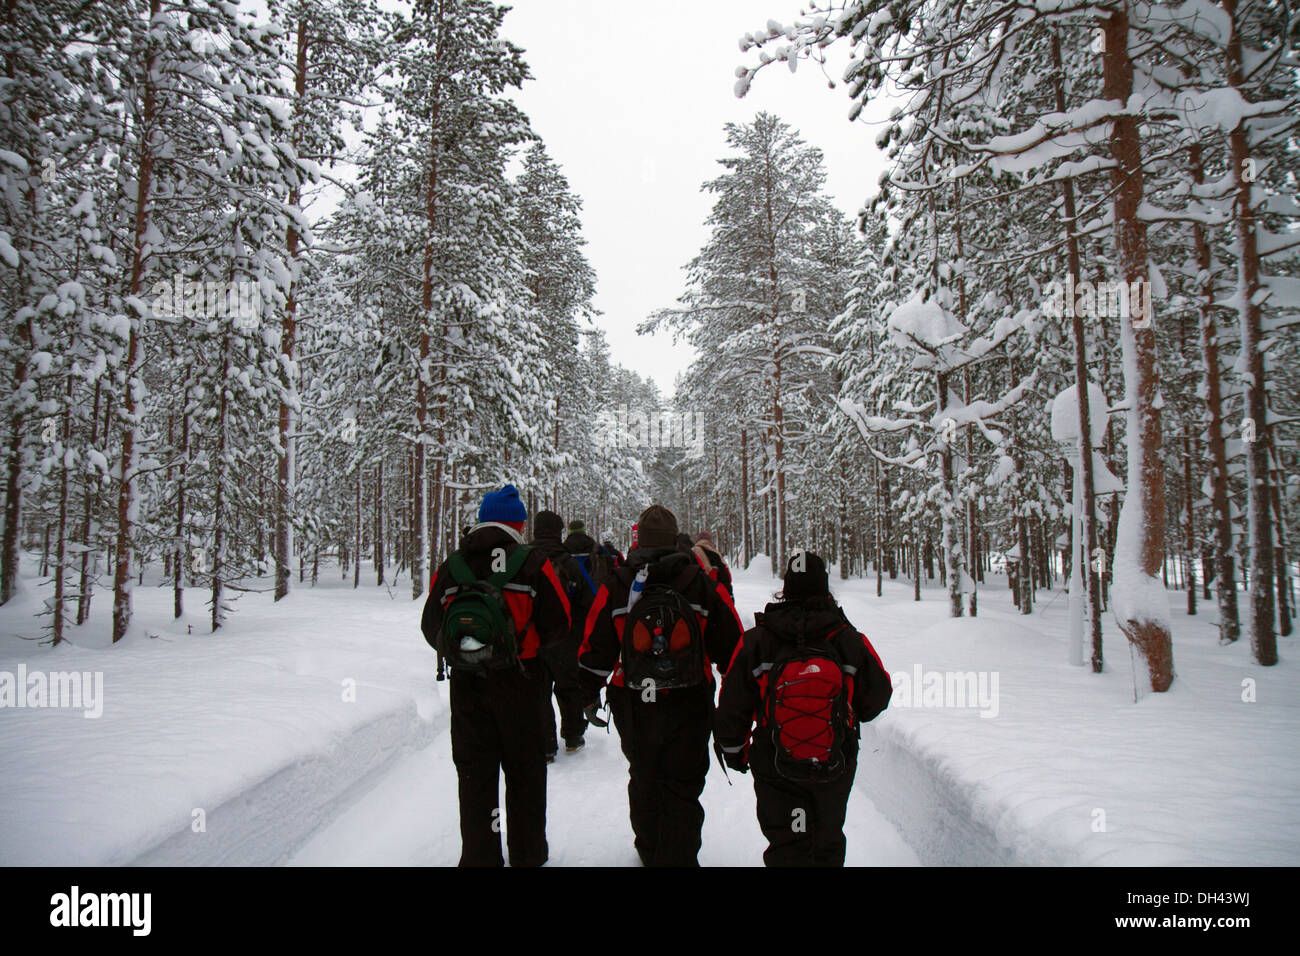 Eco tourisme - un groupe en randonnée dans la forêt couverte de neige, la Laponie Scandinavie Banque D'Images